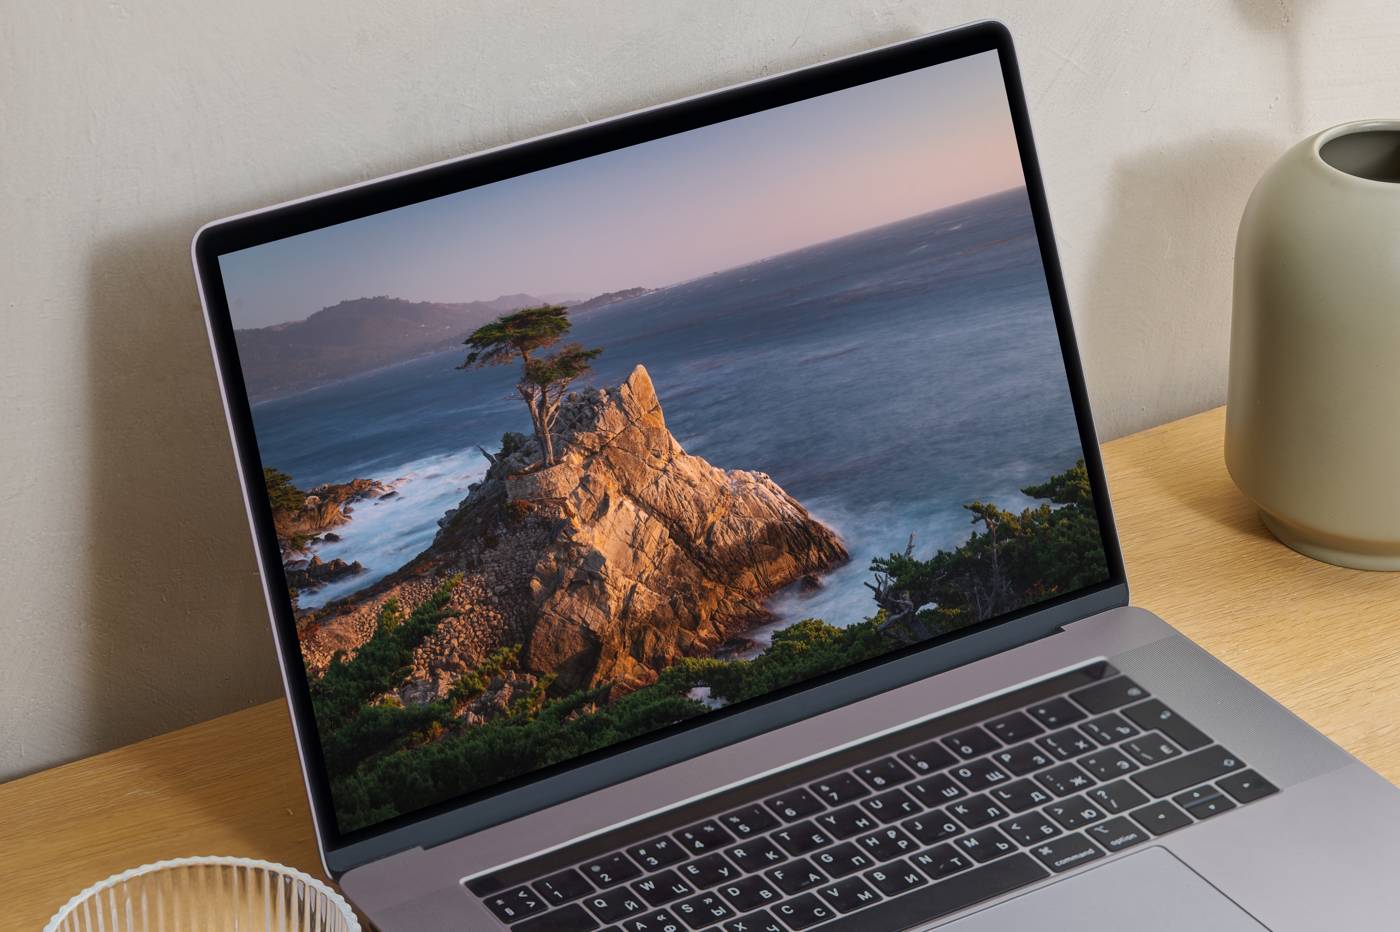 Fond d'écran Monterey dans Mac